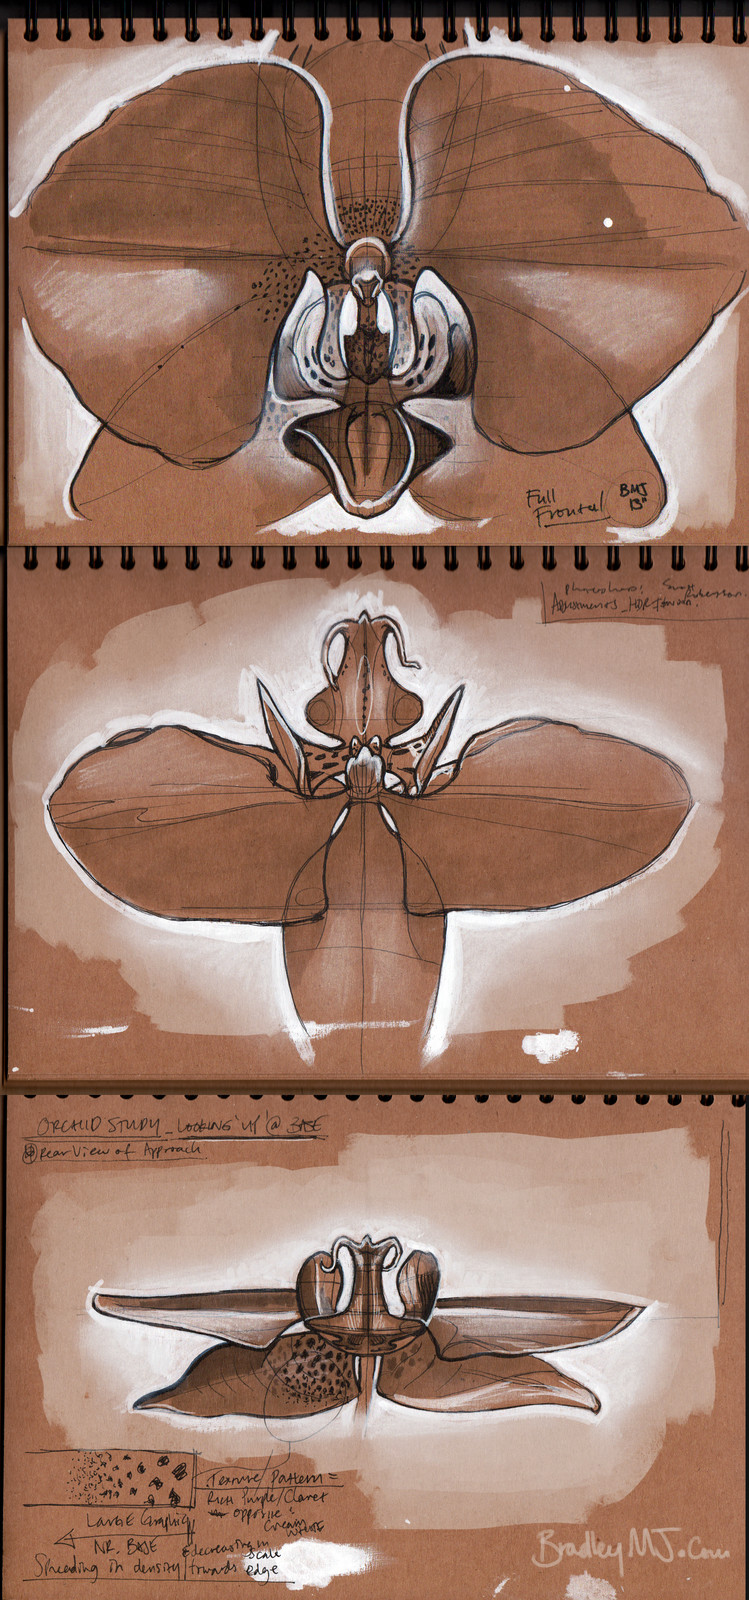 Orchid shape studies